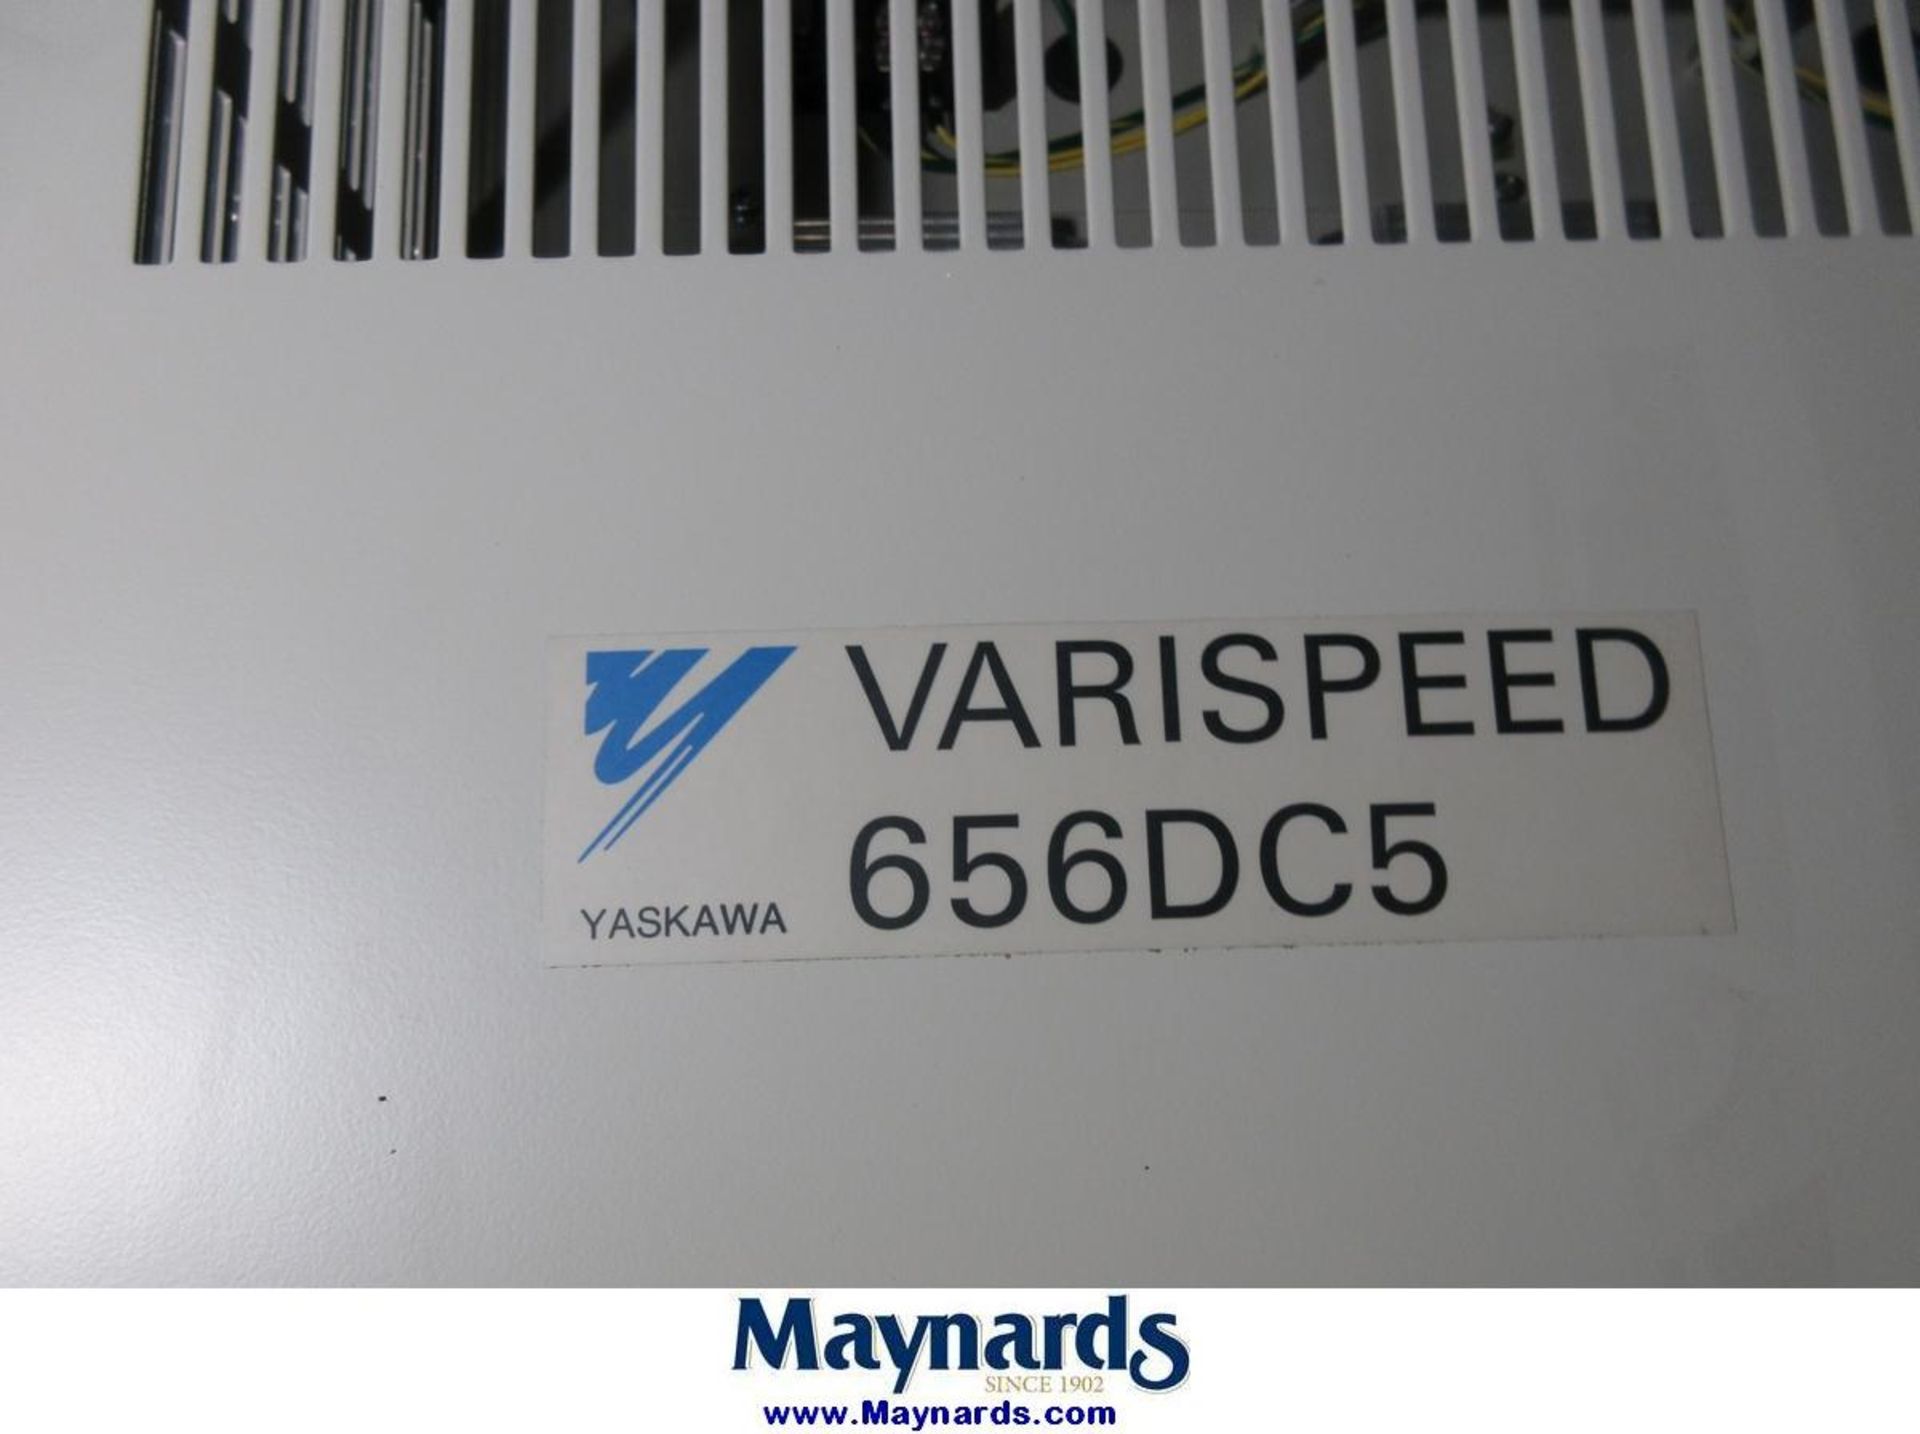 Yaskawa Varispeed 656DC5 PWM Transistor Controller - Image 3 of 5